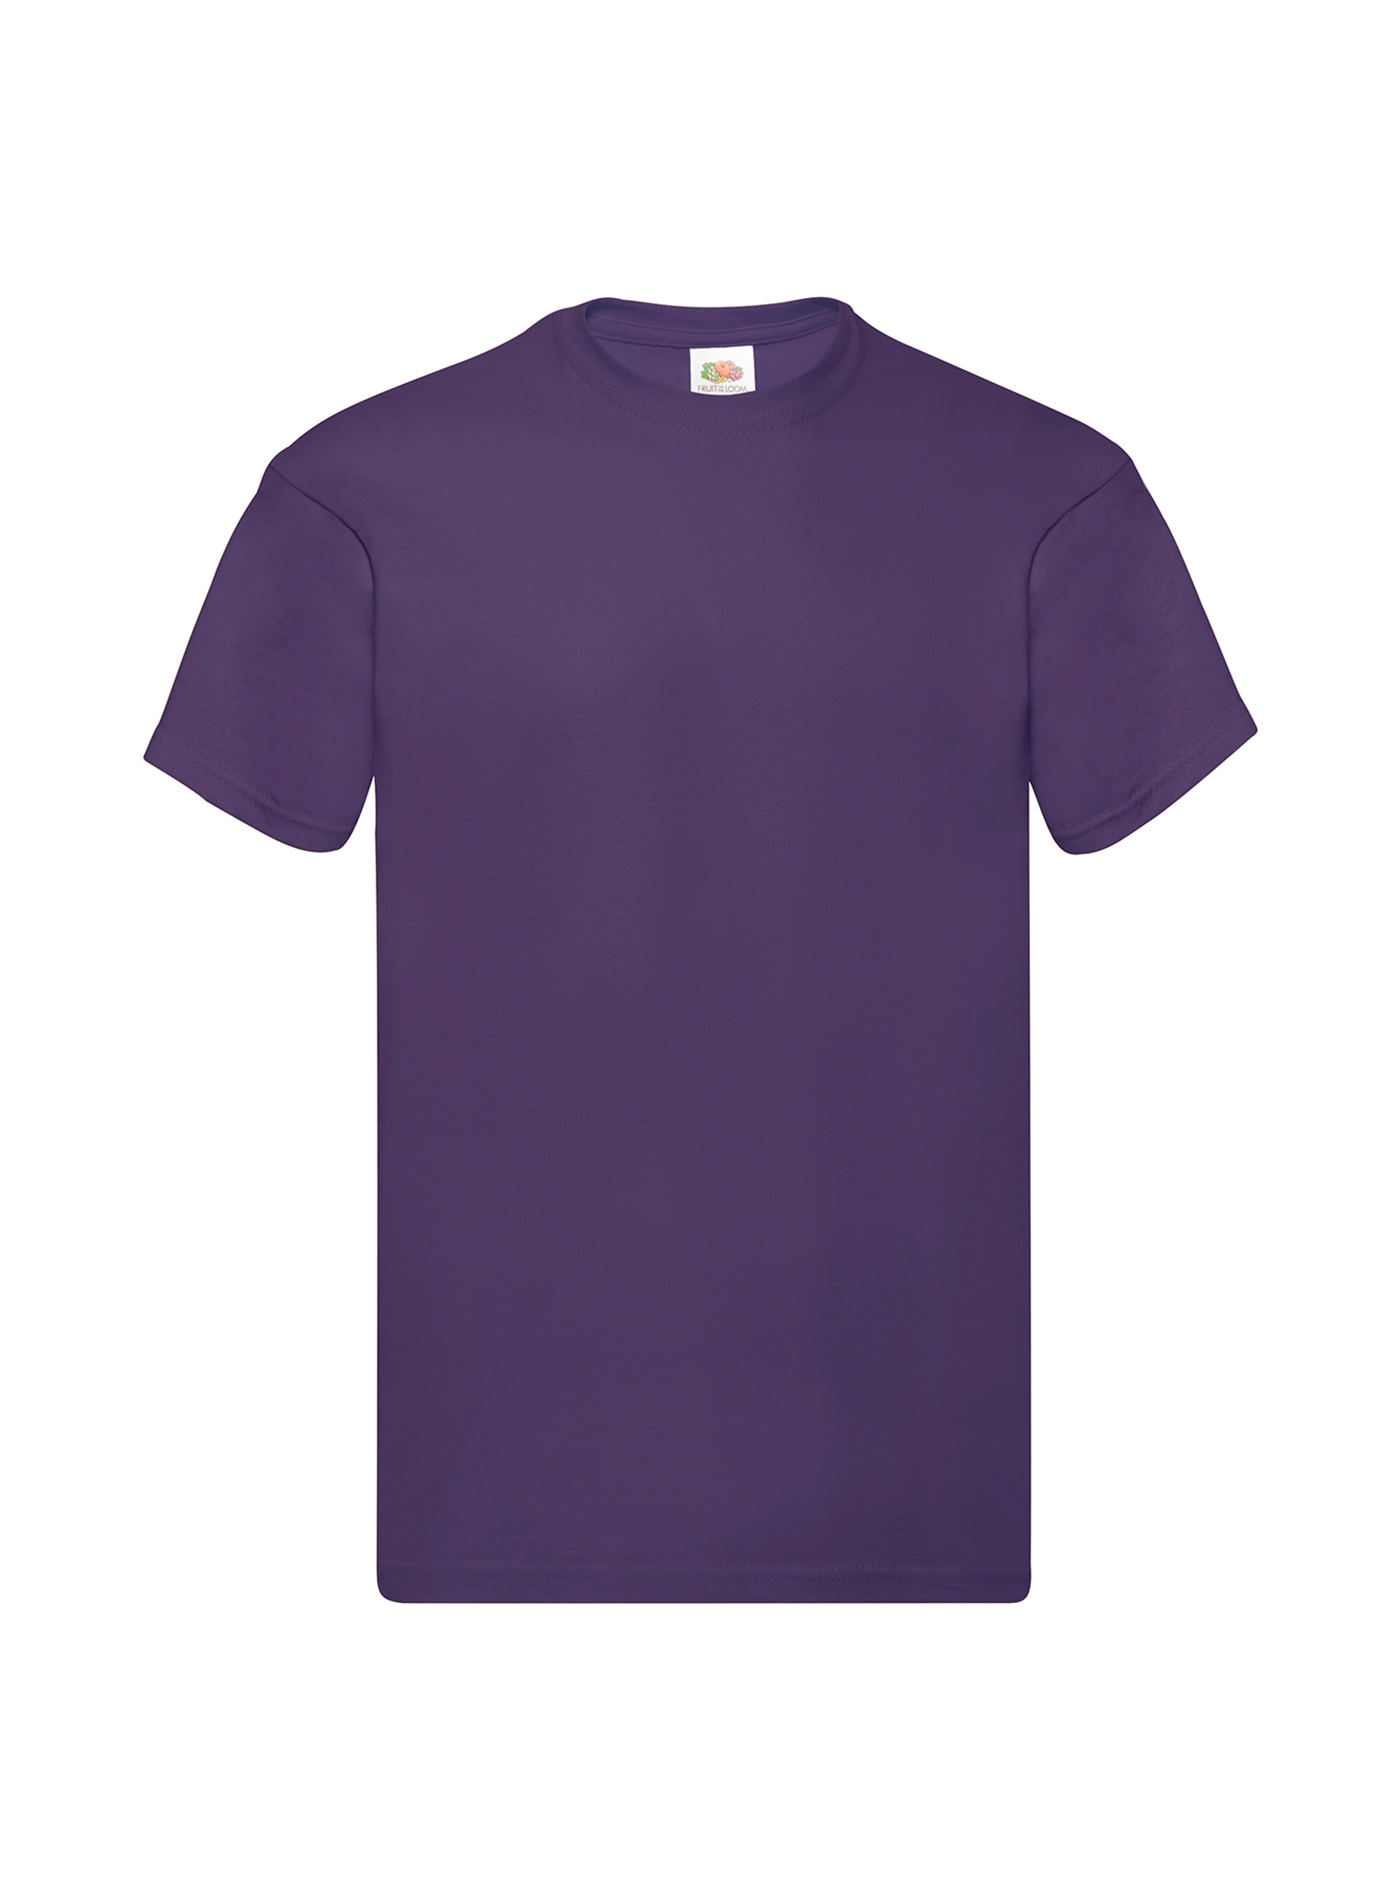 Pánské tričko Original - Tmavě fialová XL